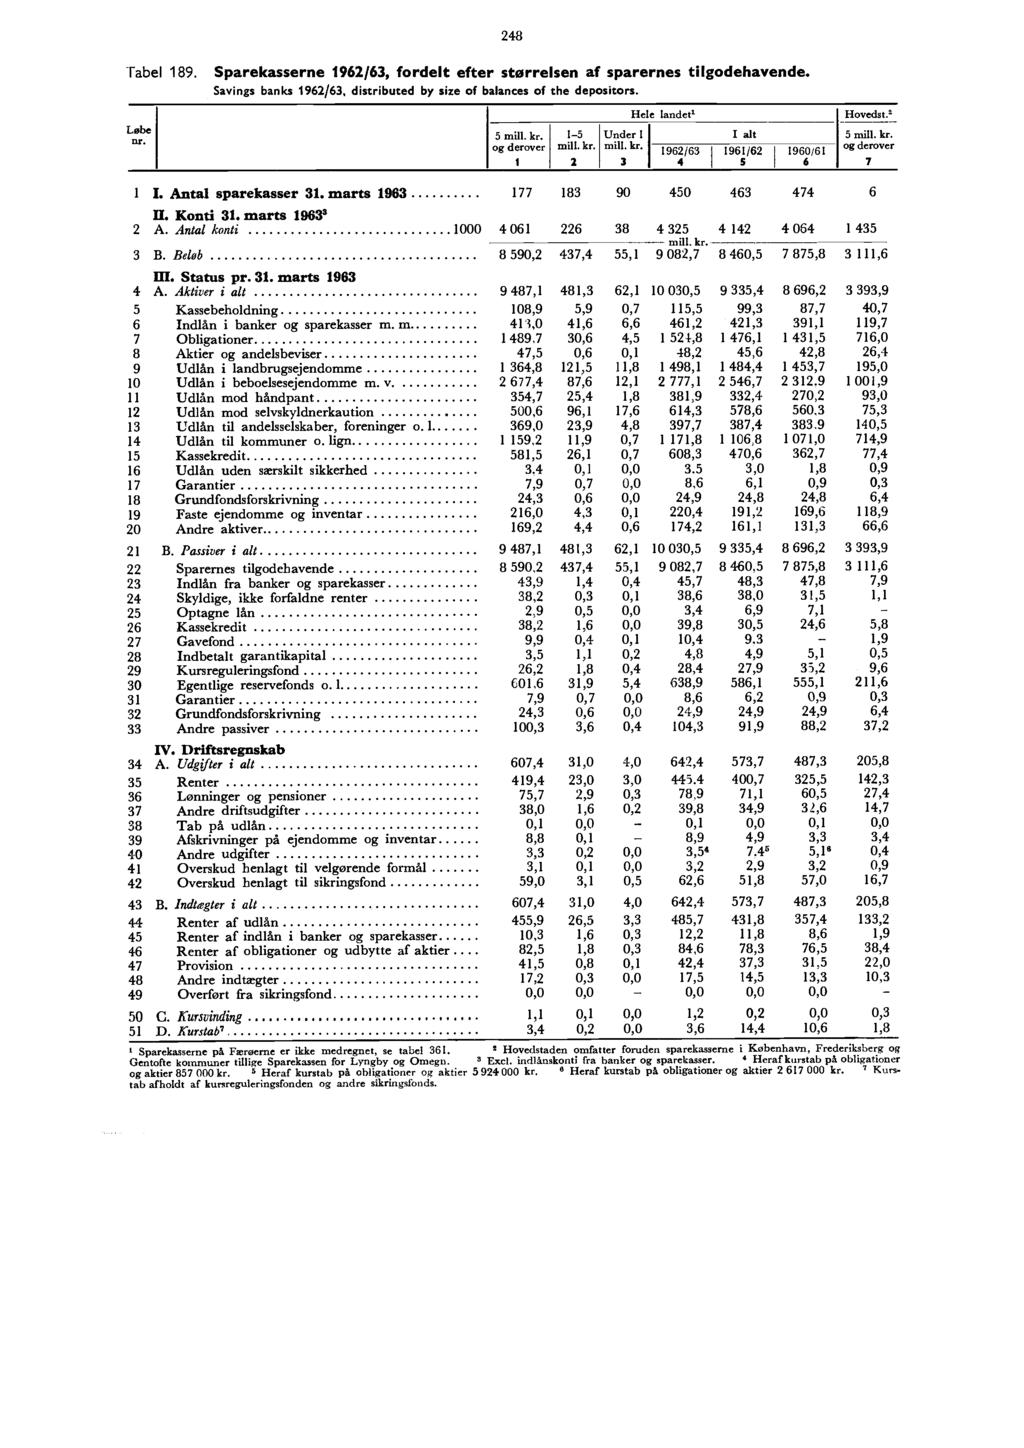 Tabel 189. Løbe nr. 248 Sparekasserne 1962/63, fordelt efter størrelsen af sparernes tilgodehavende. Savings banks 1962/63, distributed by size of balances of the depositors.